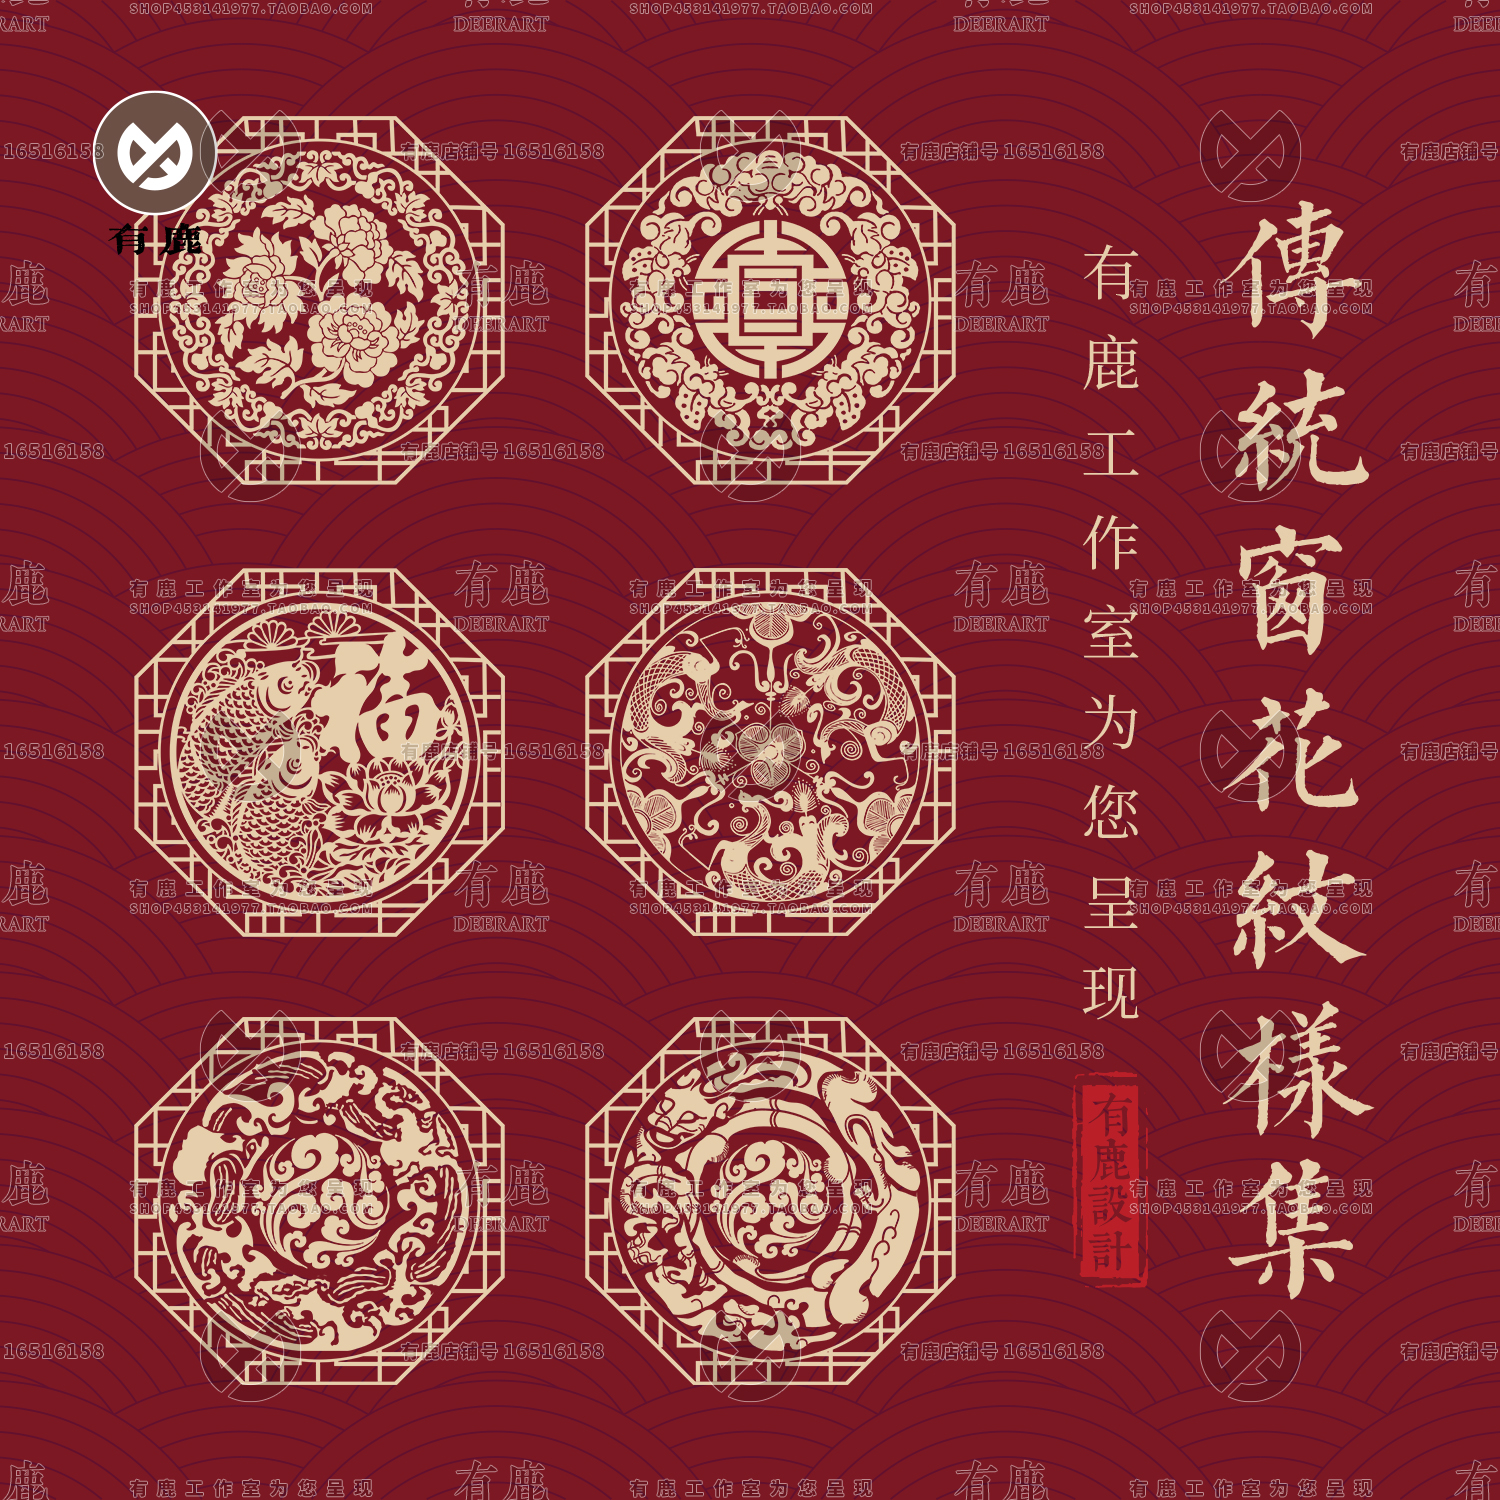 中国风中式古典传统雕刻镂空窗花纹样窗纹图案矢量素材PNG免抠图